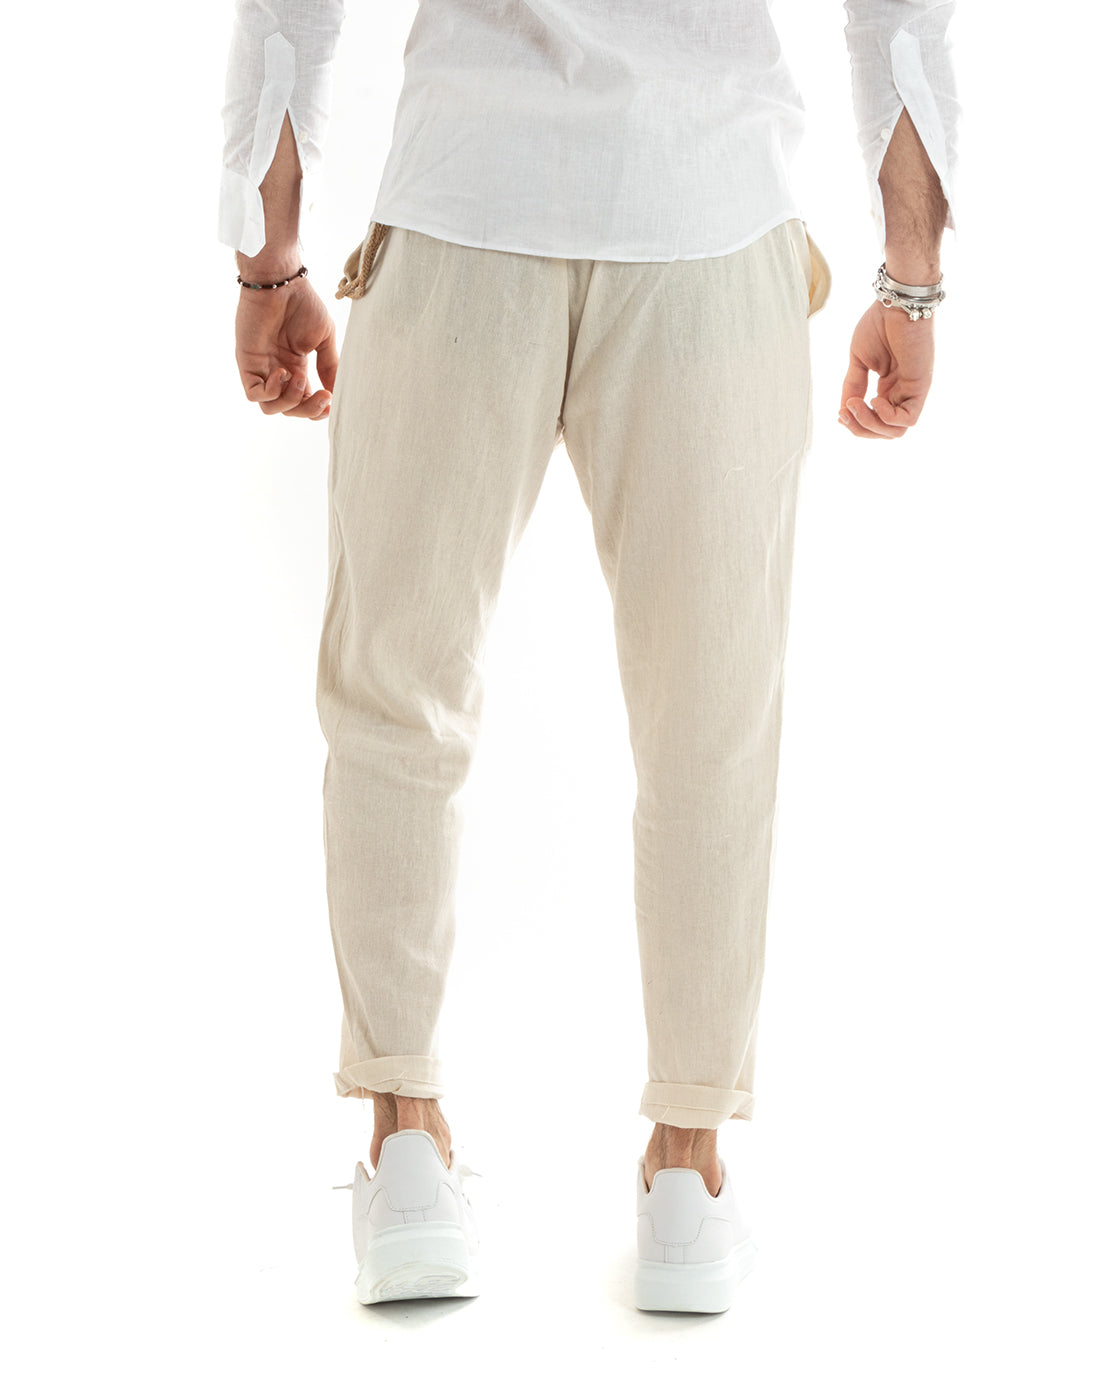 Pantaloni Uomo In Lino Tasca America Classico Sartoriale Comodo Casual Tinta Unita Beige GIOSAL-P5788A